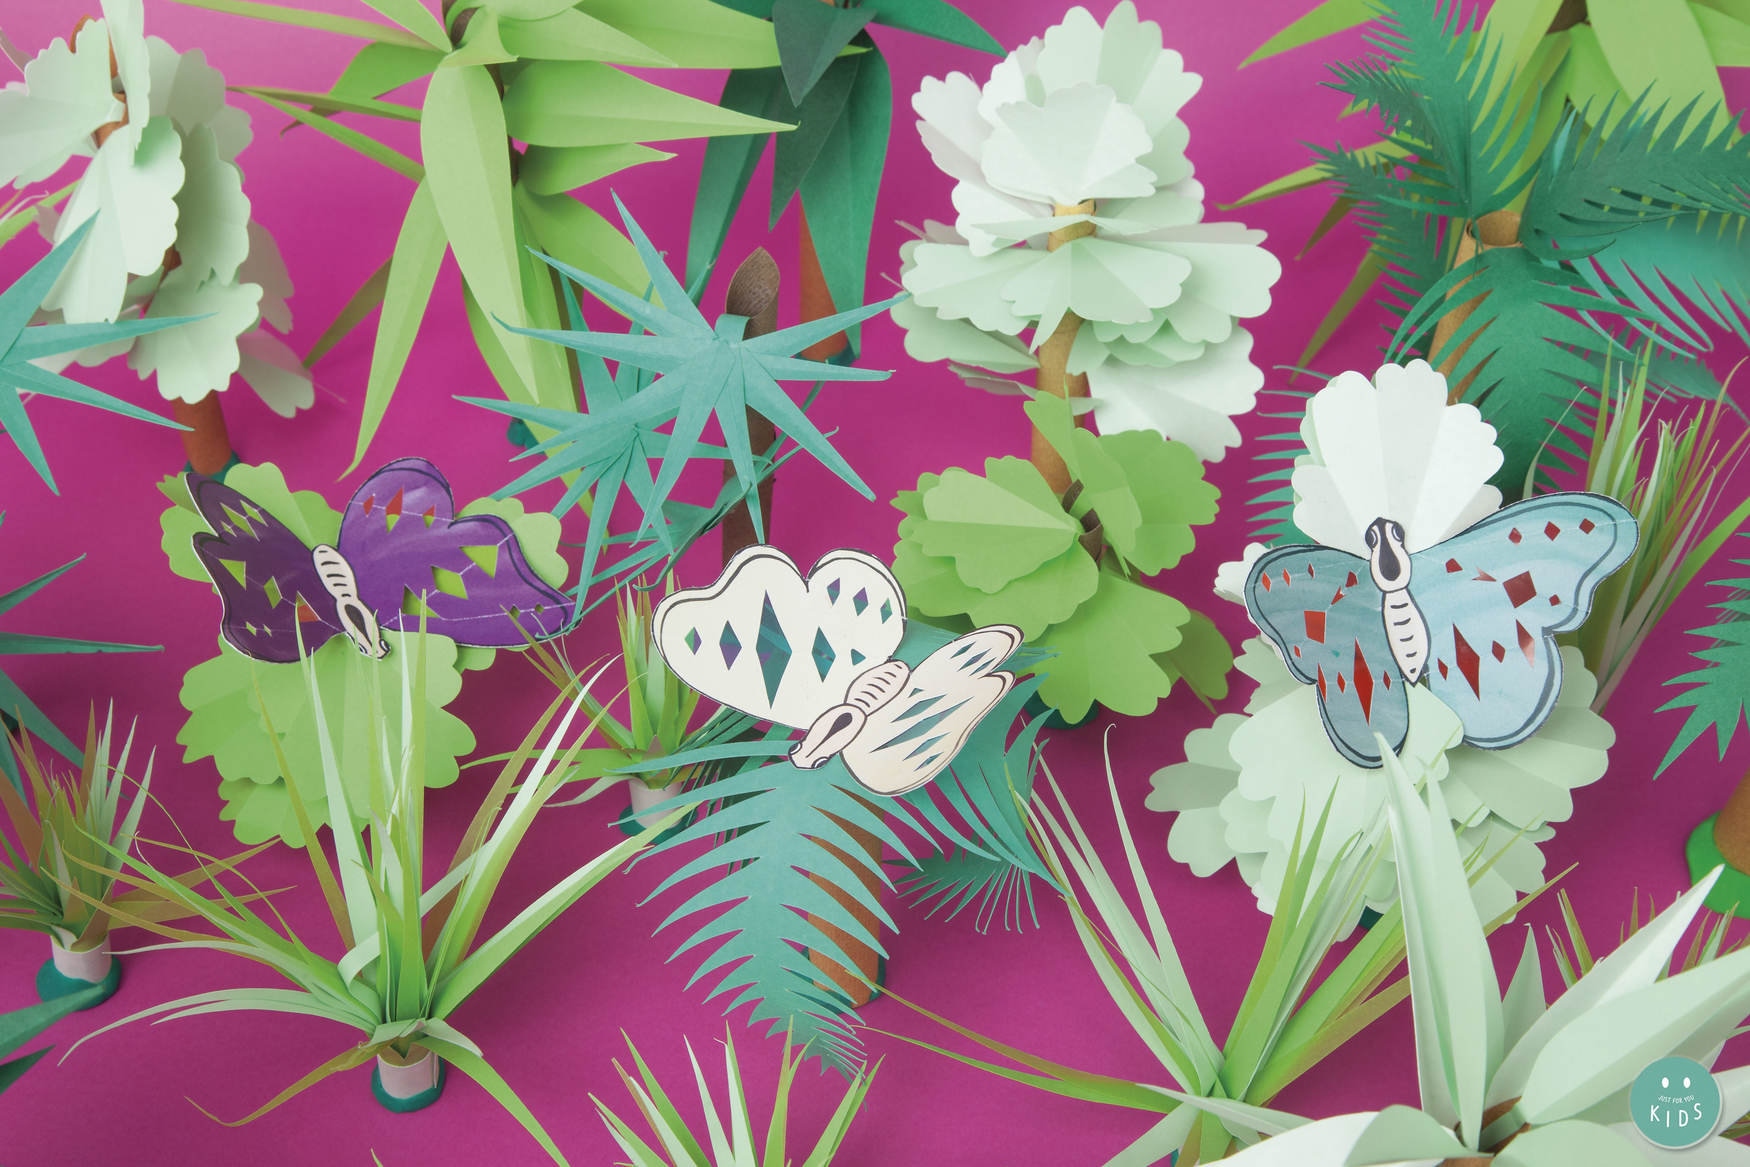 Les papallones a l'estiu - Manualitat infantil, taller creatiu, papallones estiu, manualitat estiu